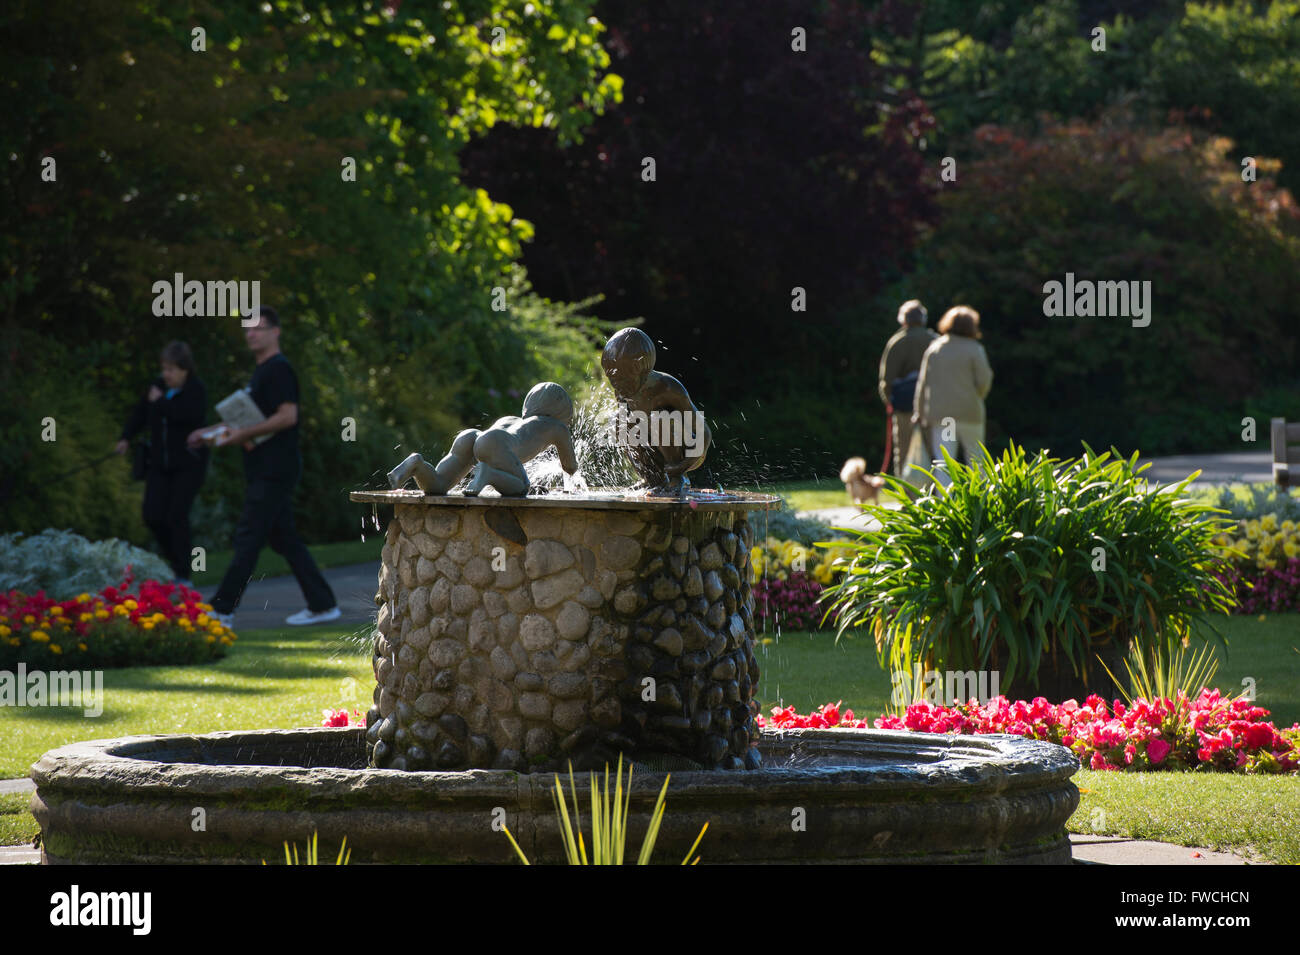 Giardini della valle, Harrogate, nello Yorkshire, Inghilterra - bella, soleggiato parco con fontana, aiuole fiorite e 4 persone e rilassanti passeggiate. Foto Stock